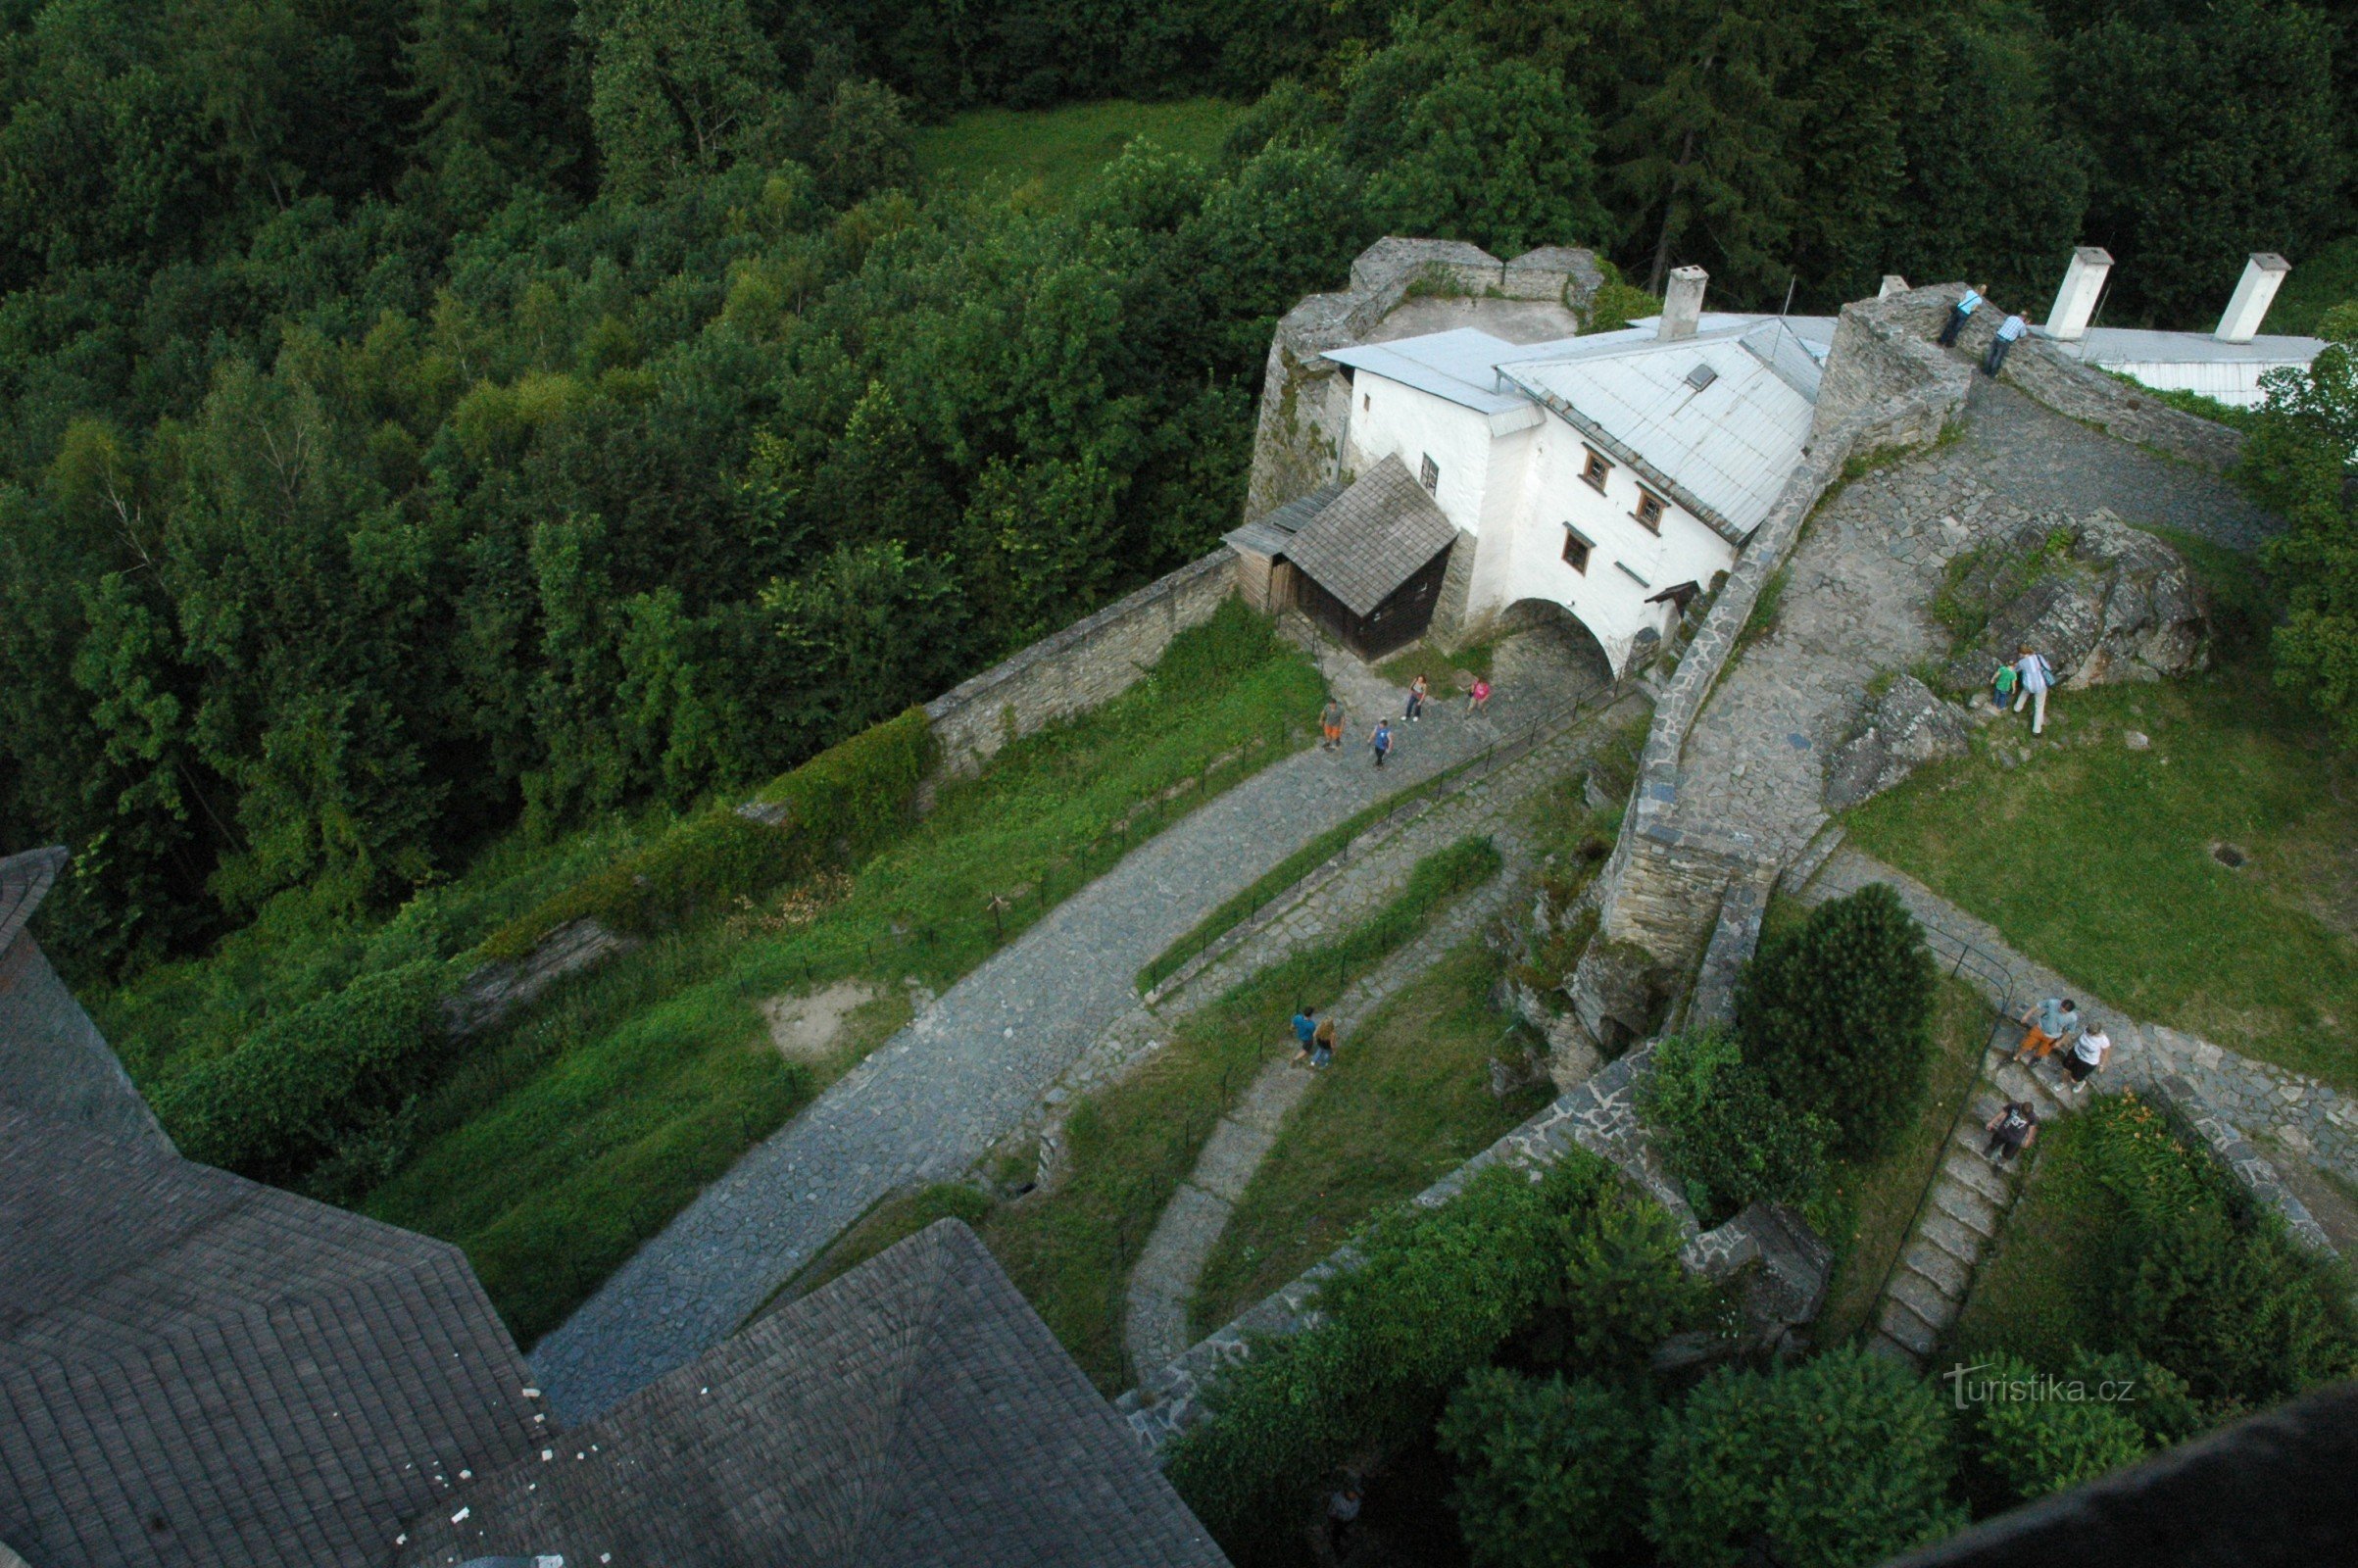 Το κάστρο Sovinec δεν κατοικείται από κουκουβάγιες, αλλά από νυχτερίδες